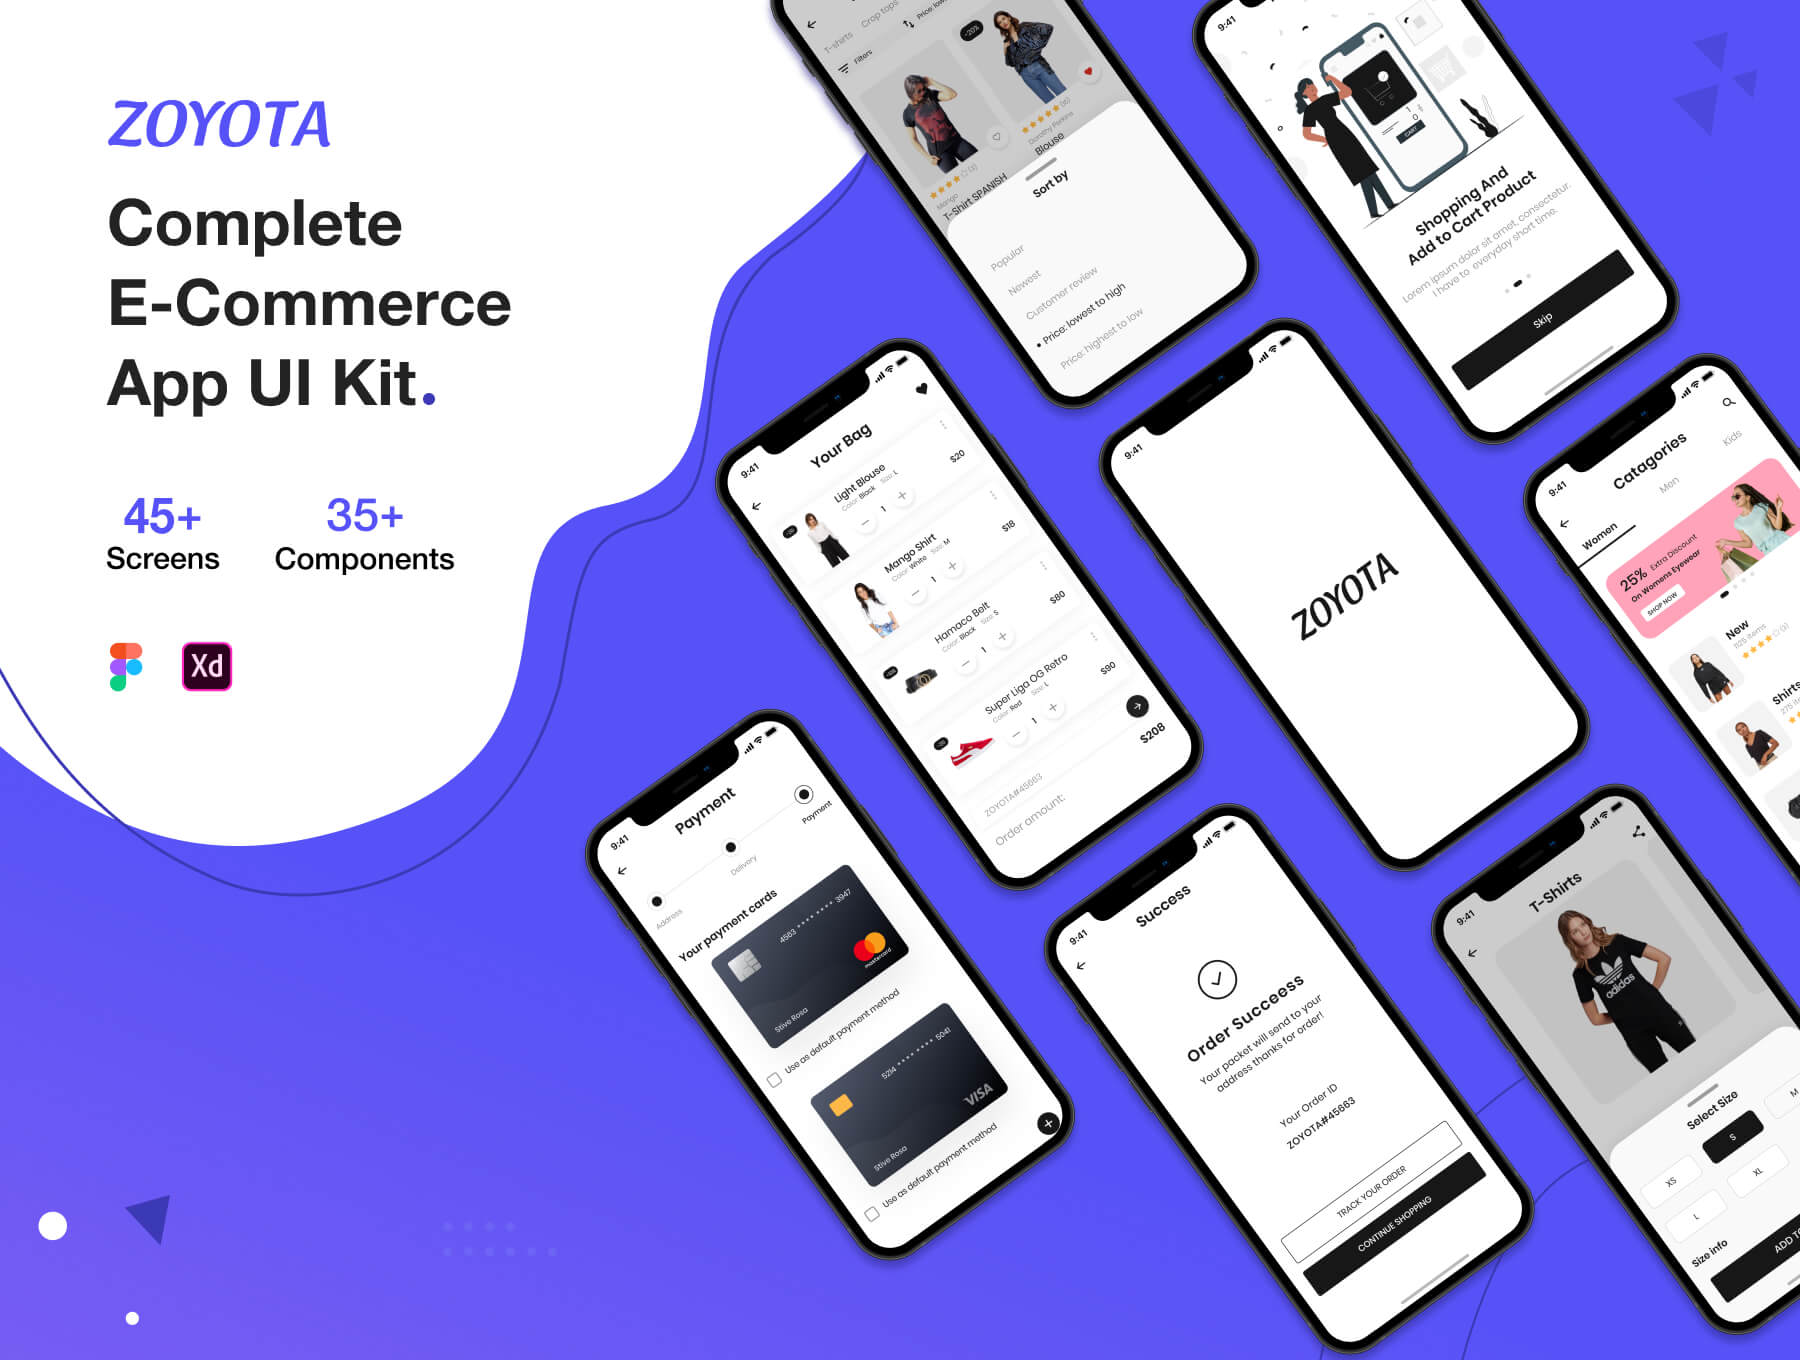 电子商务应用 UI 套件模版素材下载Zoyota eCommerce App UI Kit插图